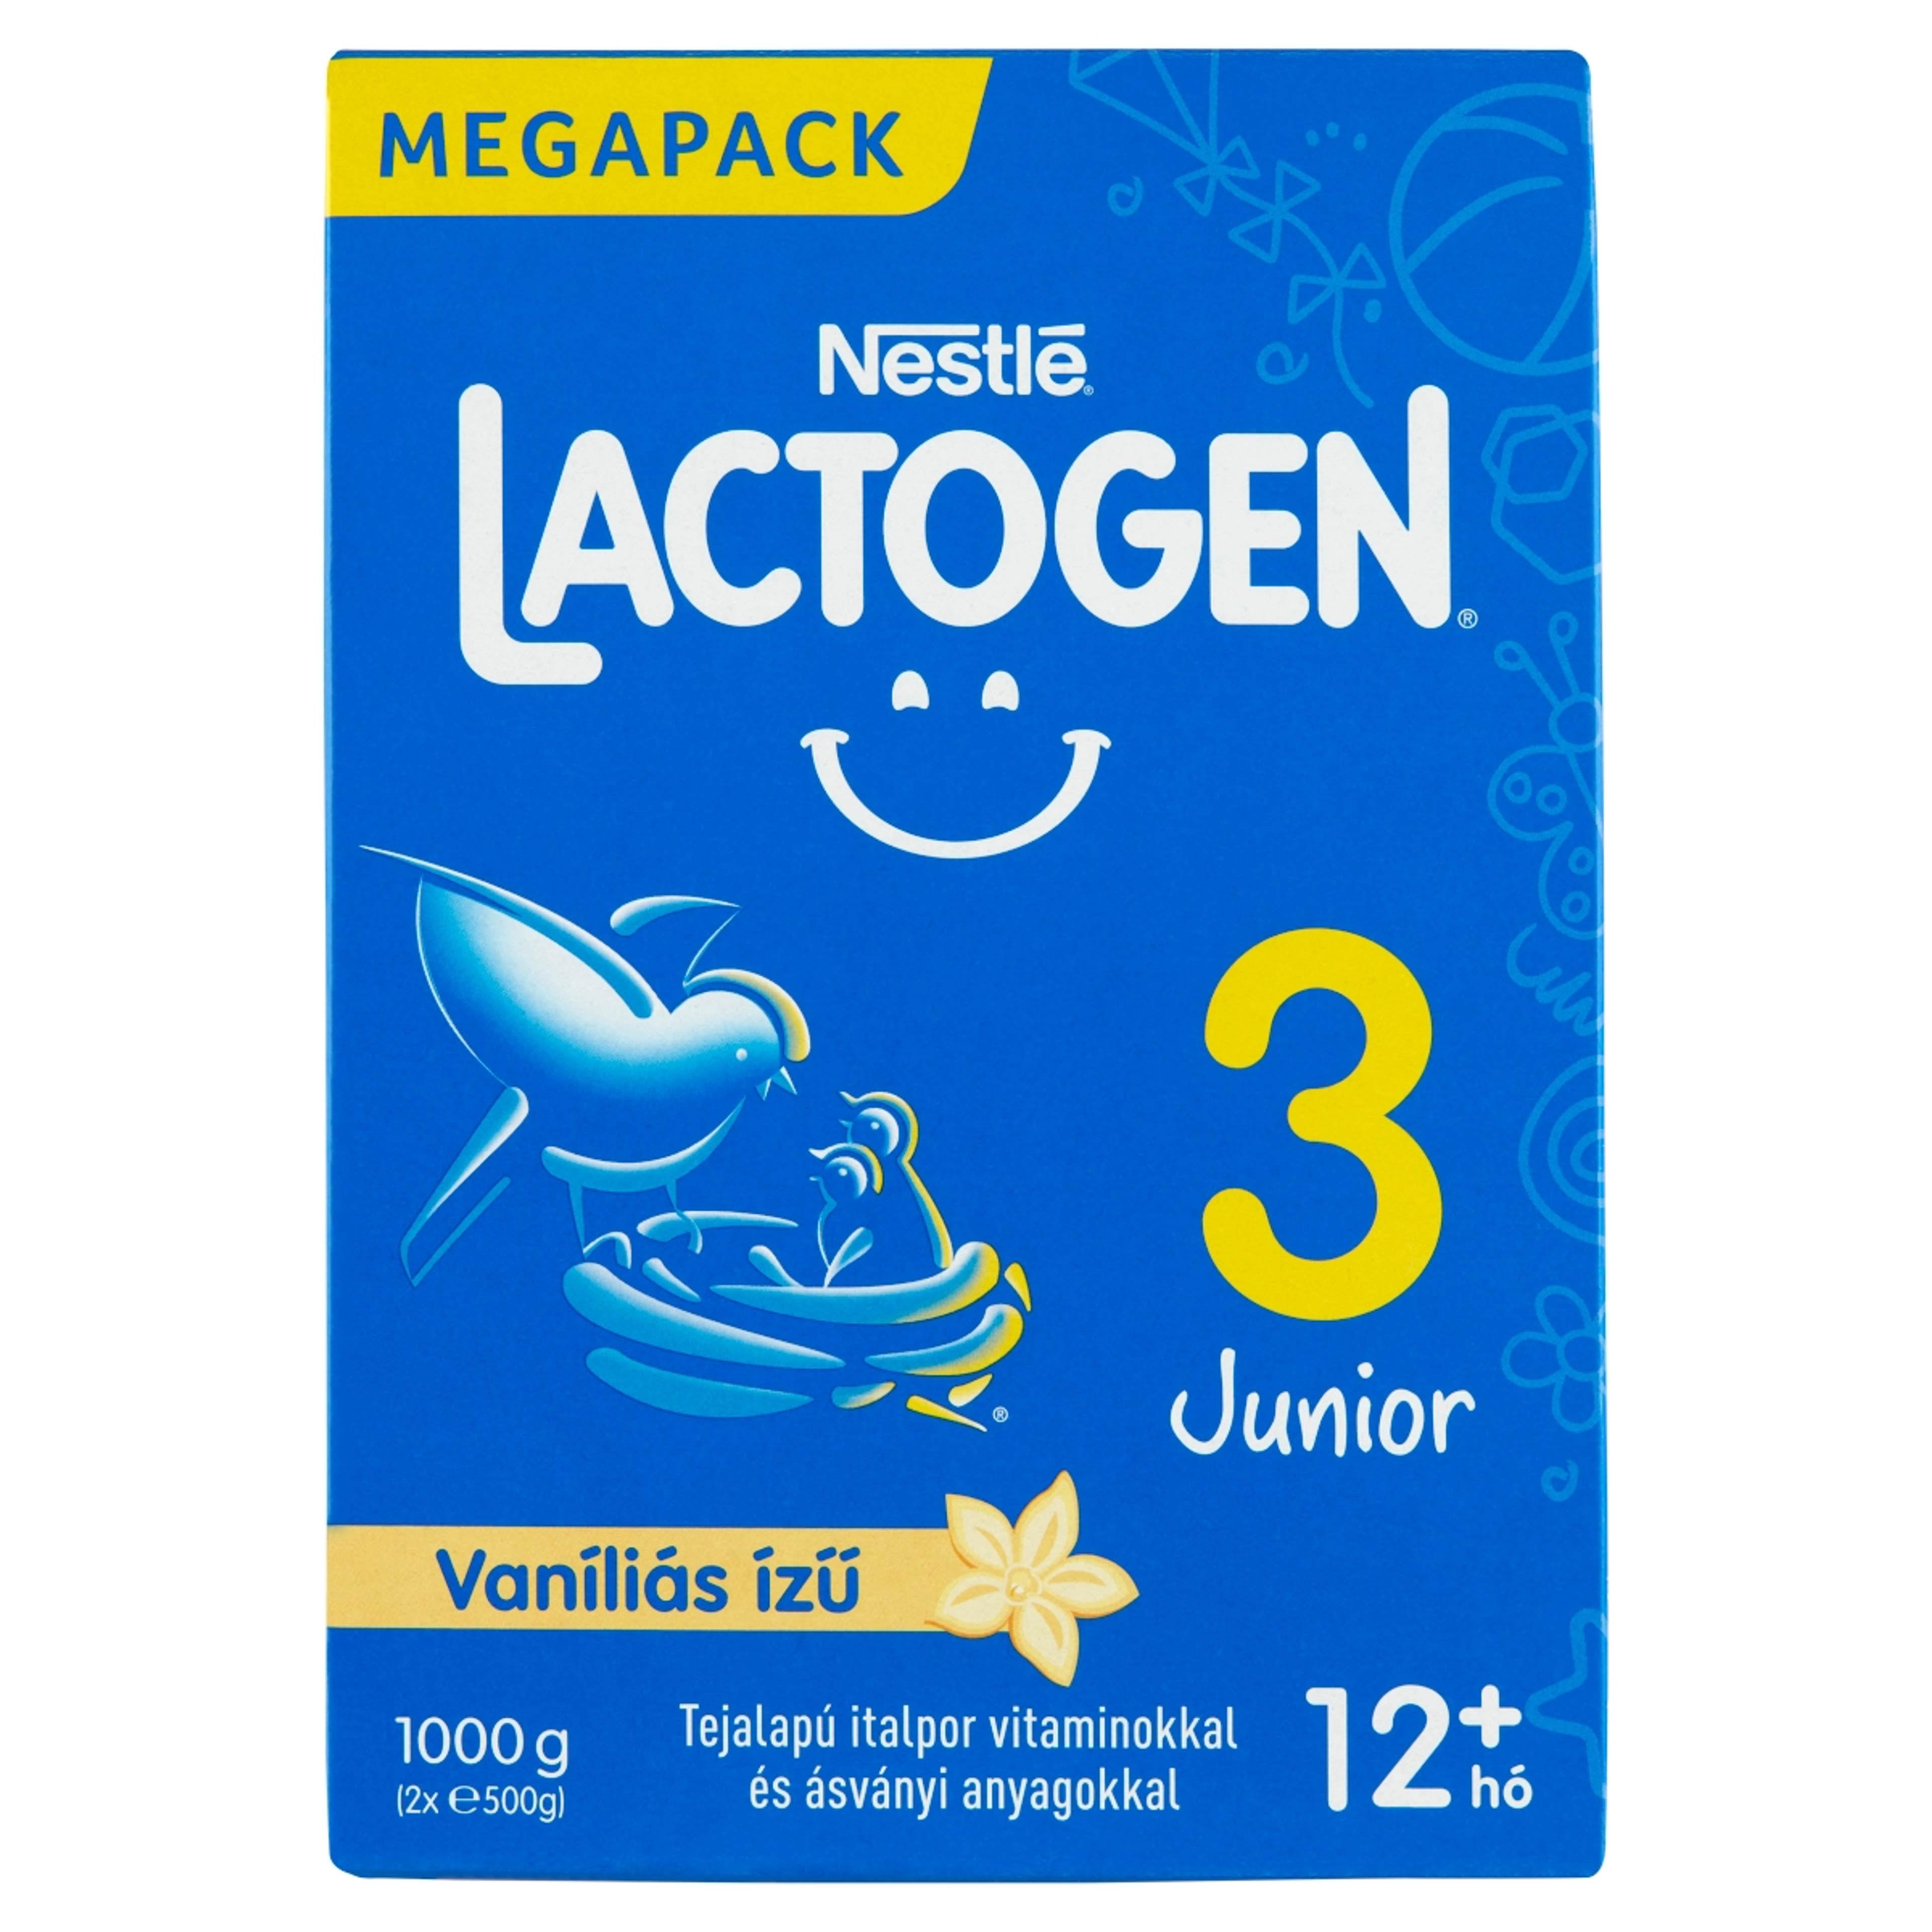 Nestlé Lactogen 3 Junior vaníliás ízű tejalapú italpor, 12 hónapos kortól - 1000 g